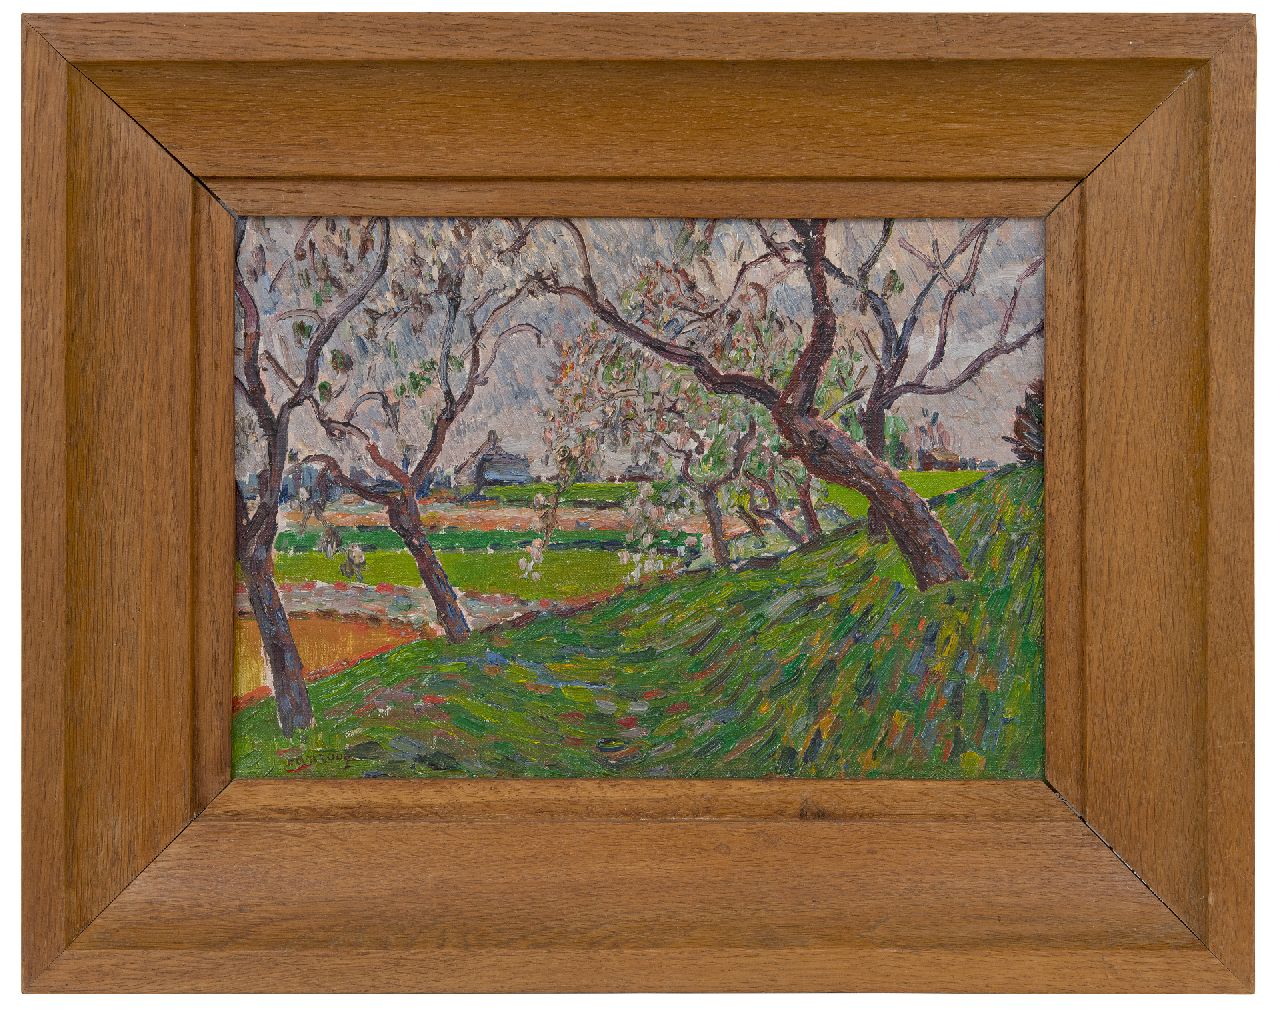 Anrooy J.A.M. van | 'Jan' Adriaan Marie van Anrooy, Landschap met bloesembomen, olieverf op doek 24,7 x 36,0 cm, gesigneerd linksonder